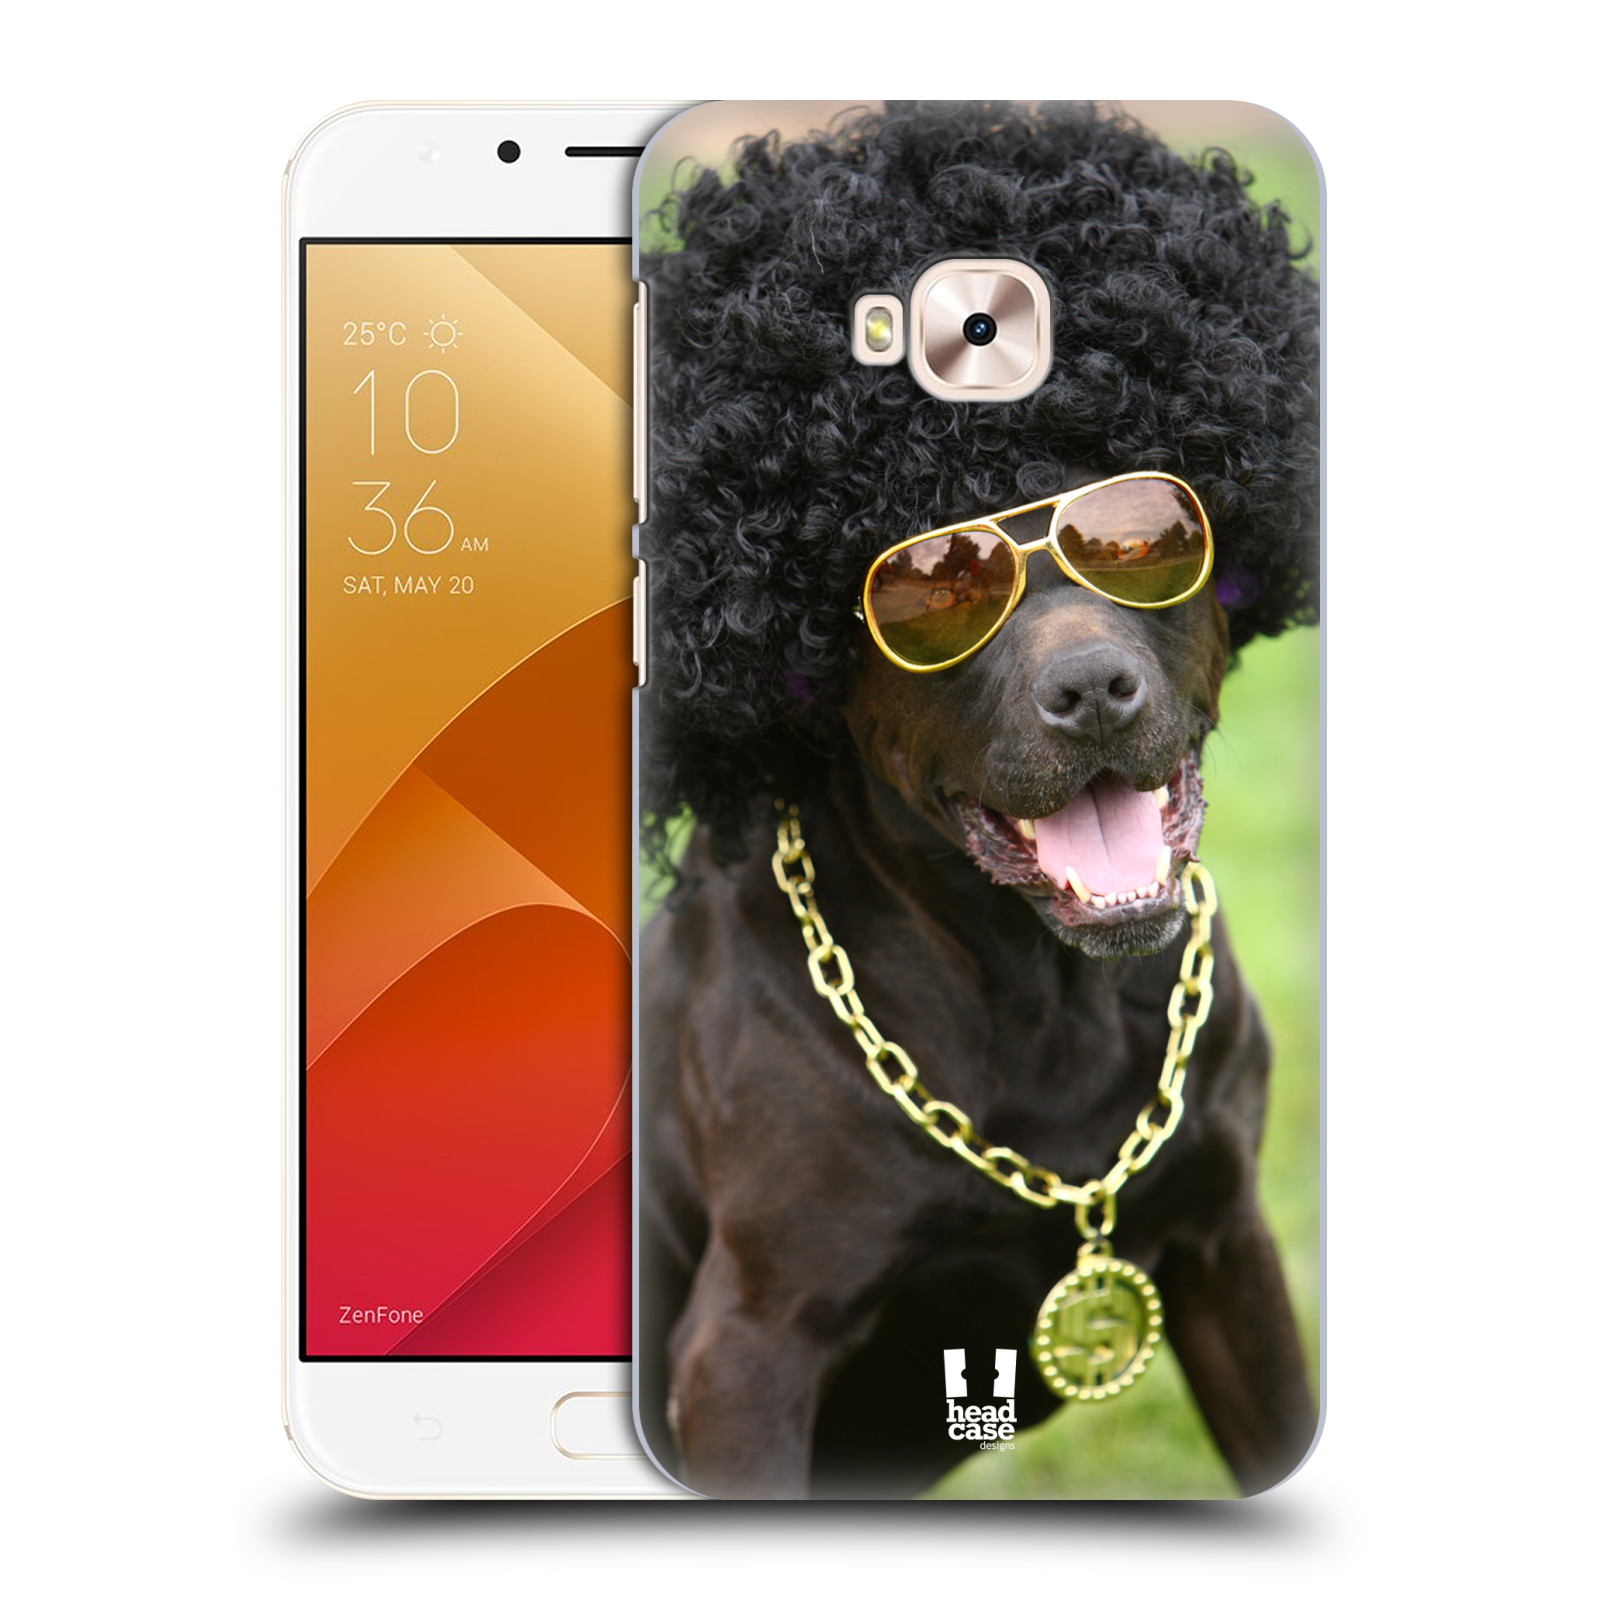 HEAD CASE plastový obal na mobil Asus Zenfone 4 Selfie Pro ZD552KL vzor Legrační zvířátka pejsek boháč